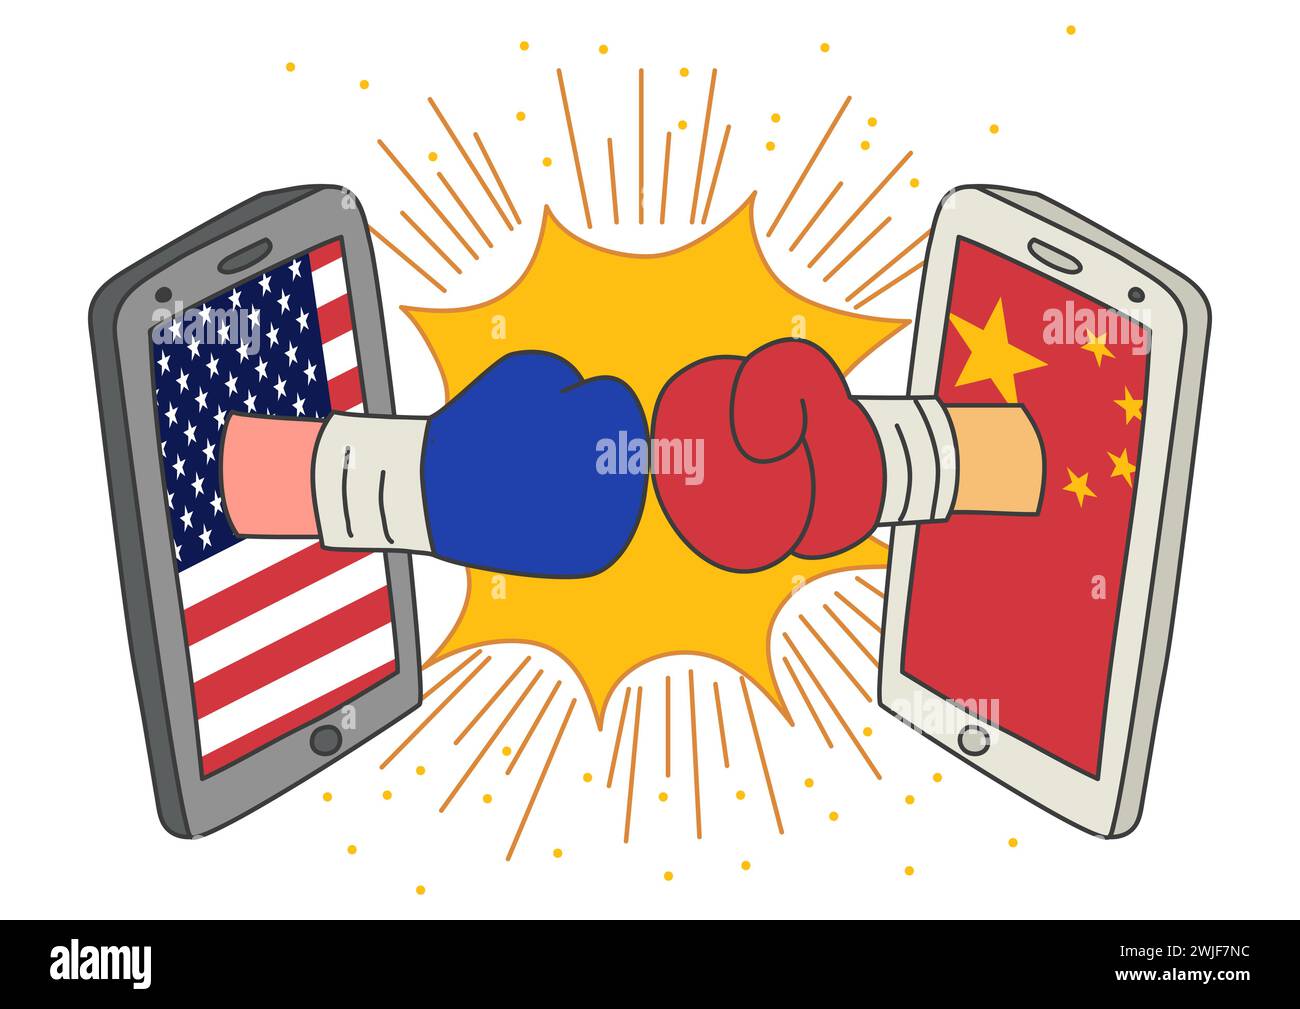 Art naïf ou dessin animé d’une confrontation entre les États-Unis et la Chine, représenté par deux gants de boxe provenant de moniteurs de smartphone Illustration de Vecteur